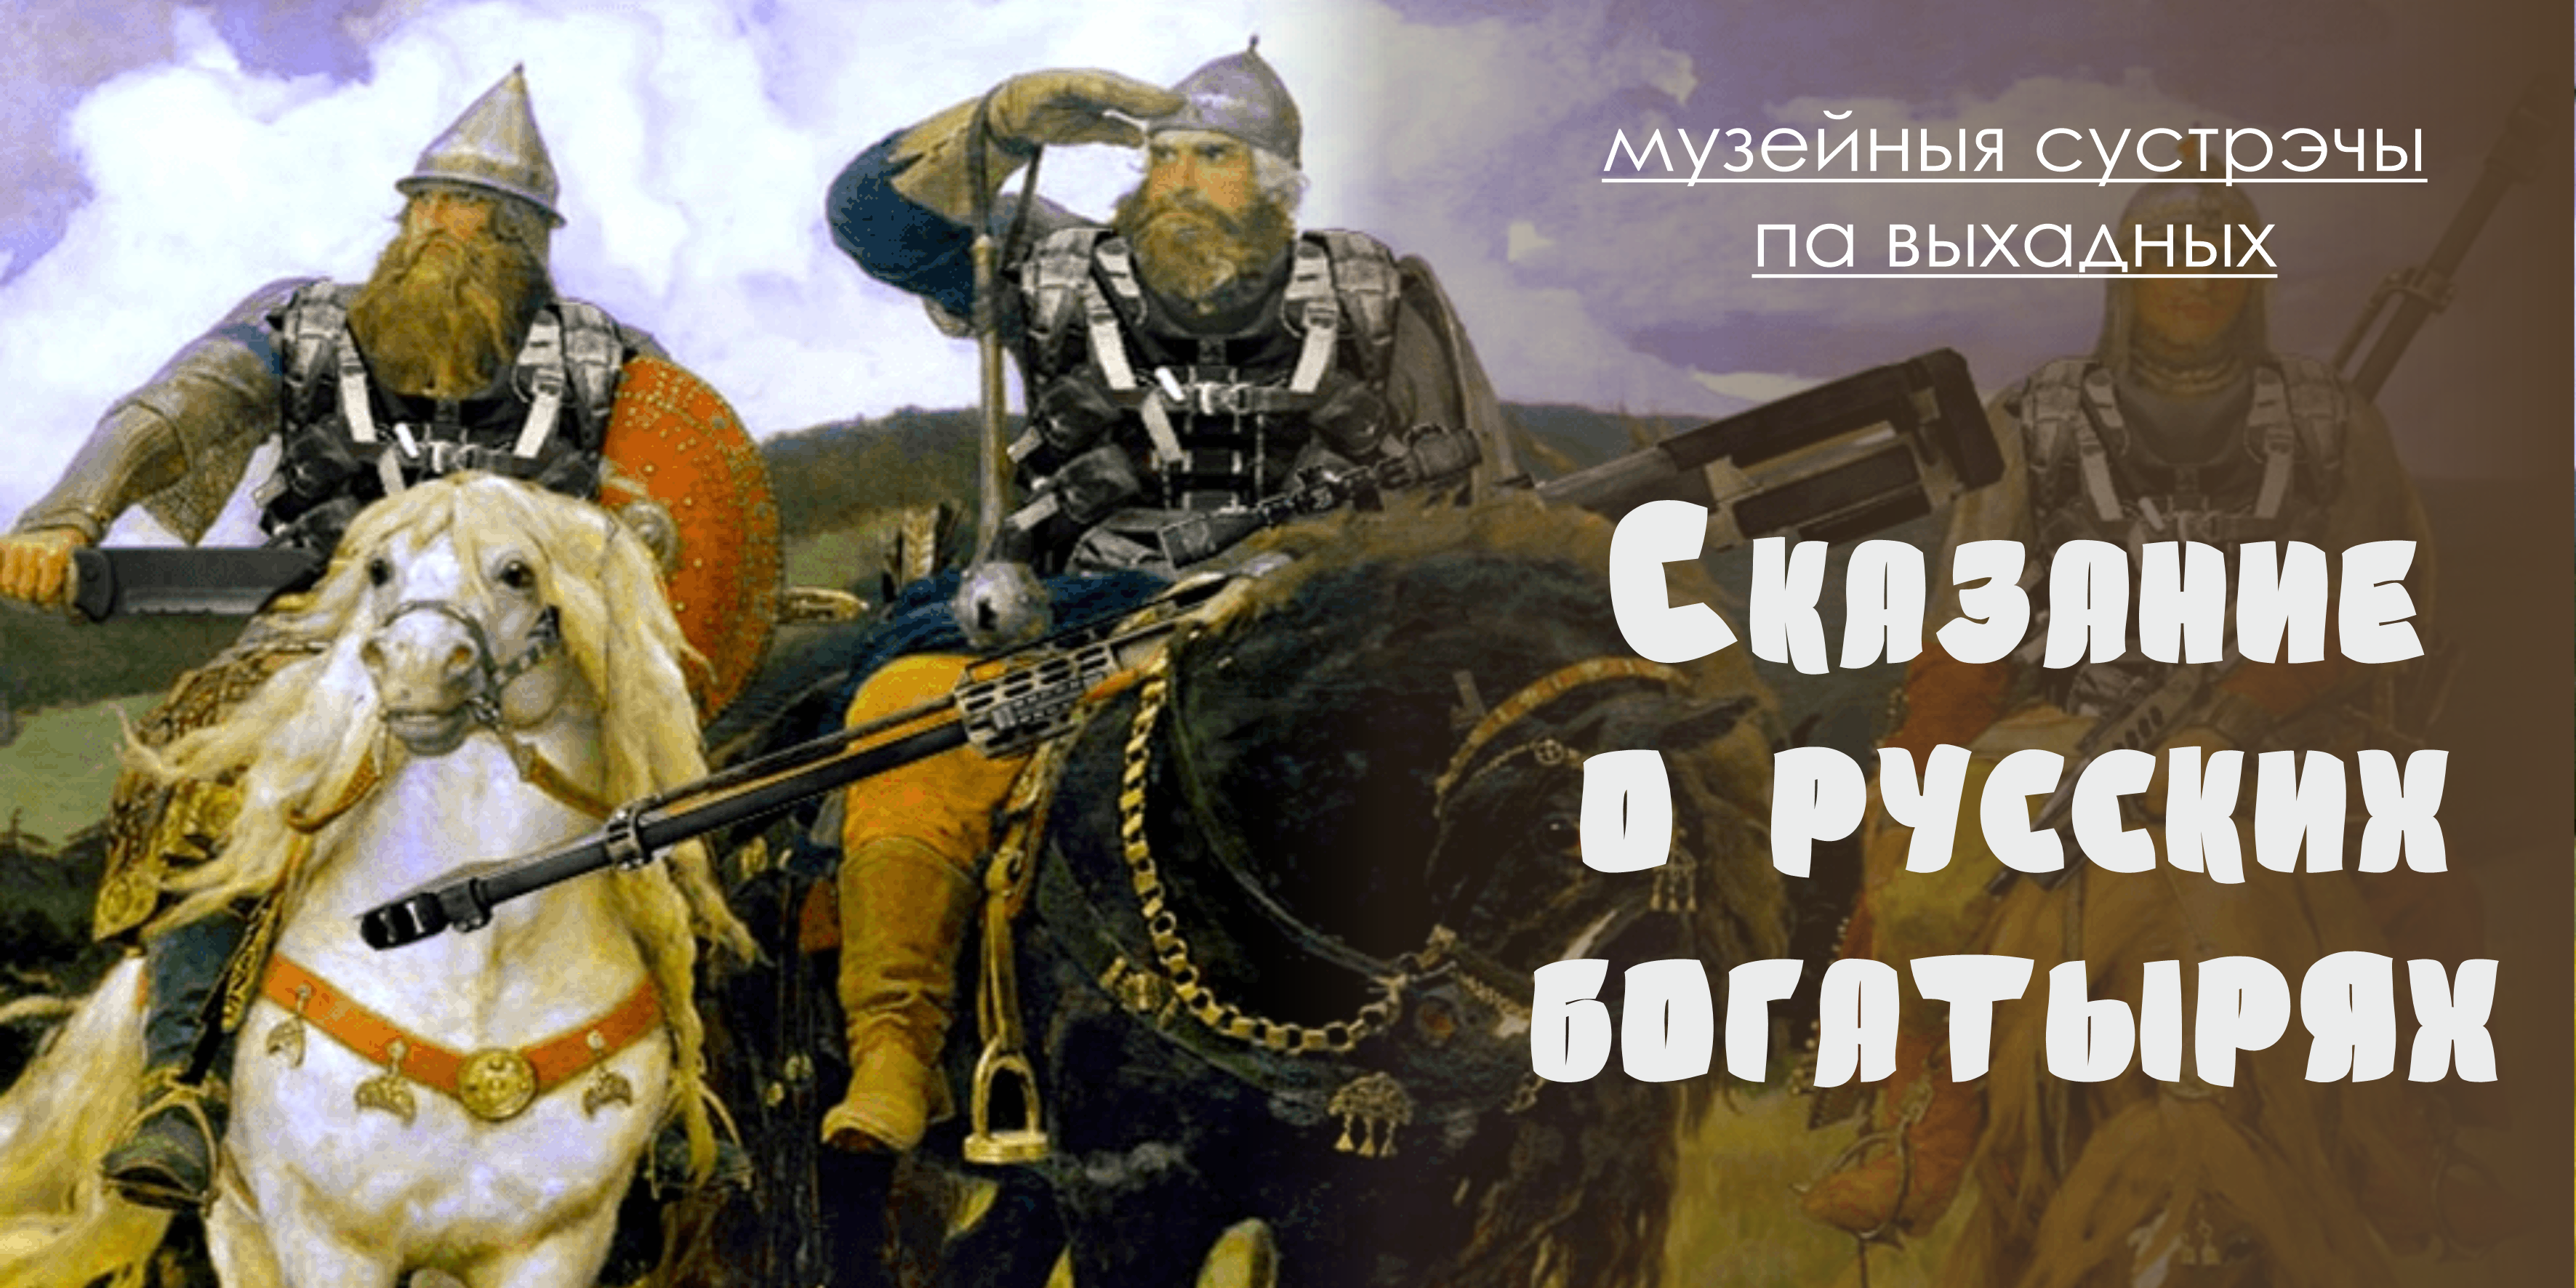 «Сказание о русских богатырях»: юных могилевчан приглашают на интерактивное занятие 3 августа